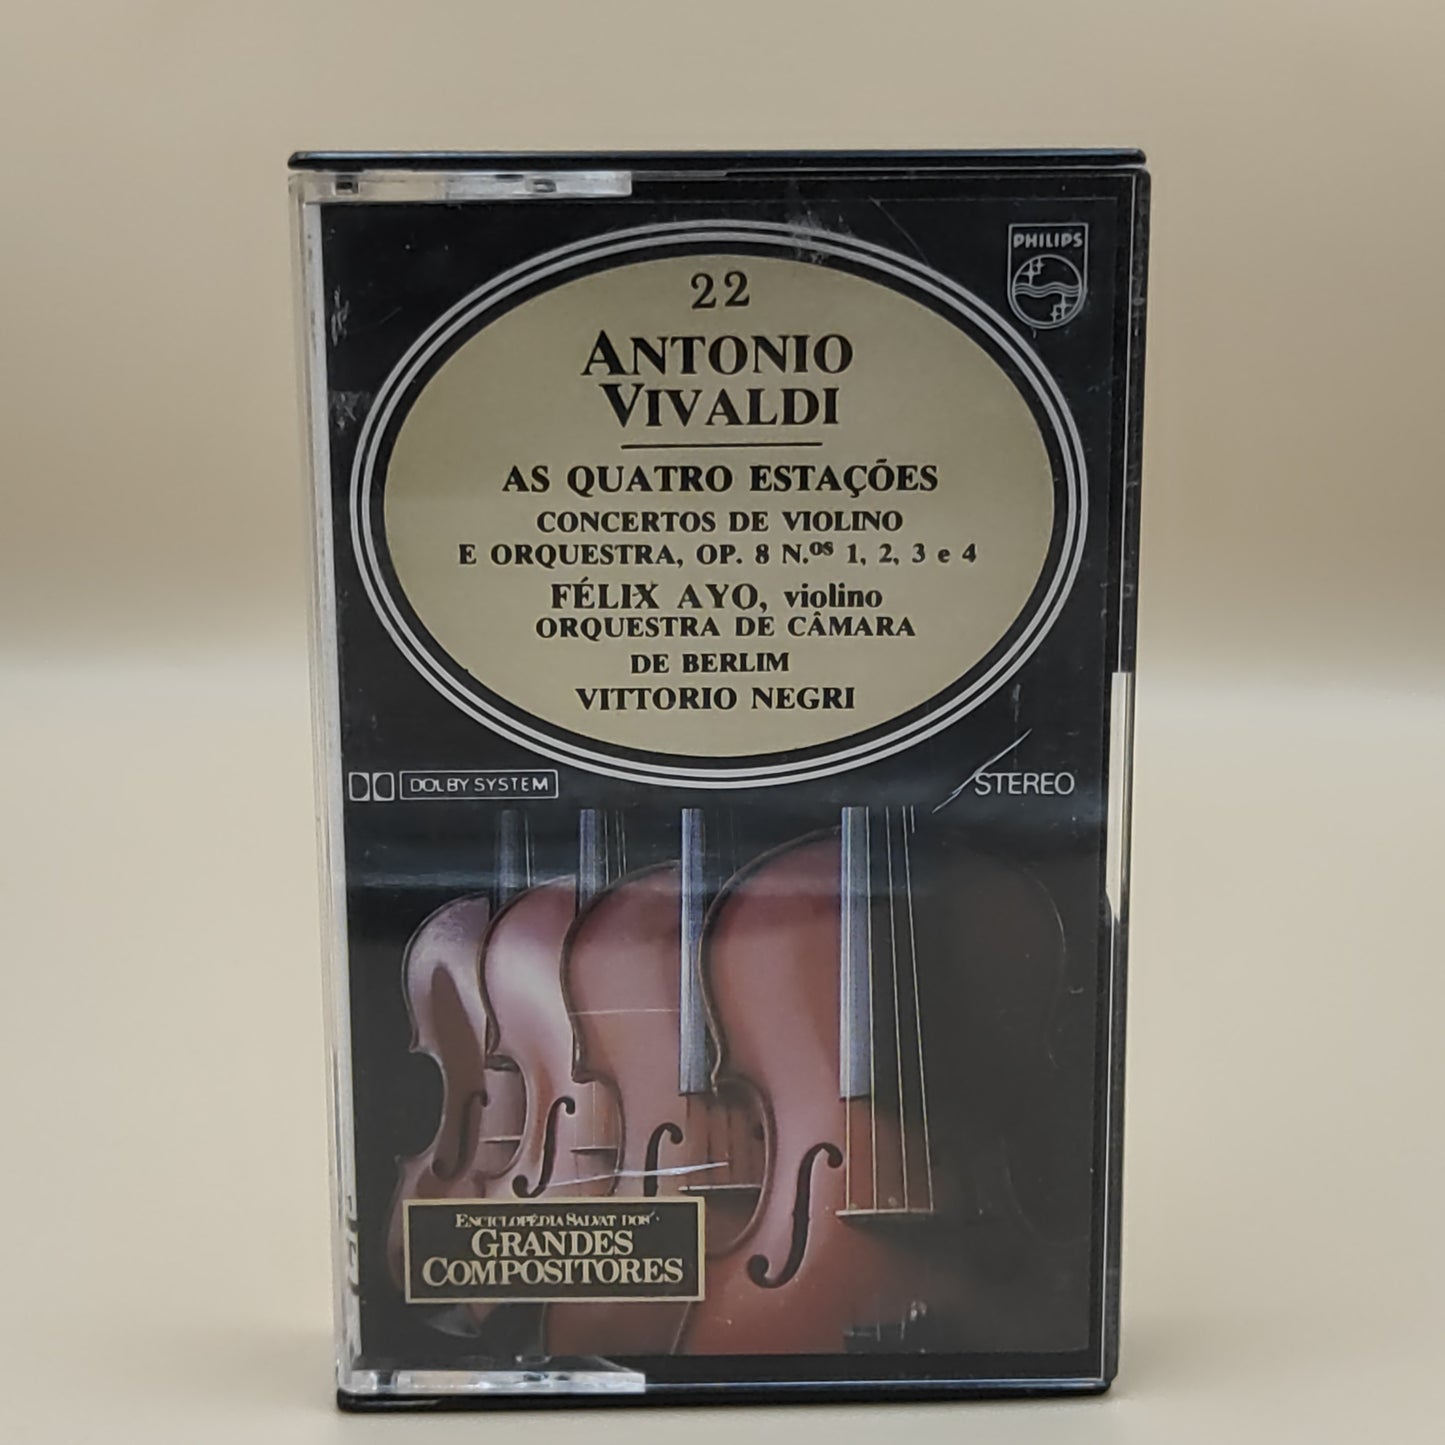 Antonio Vivaldi - As quatros estações